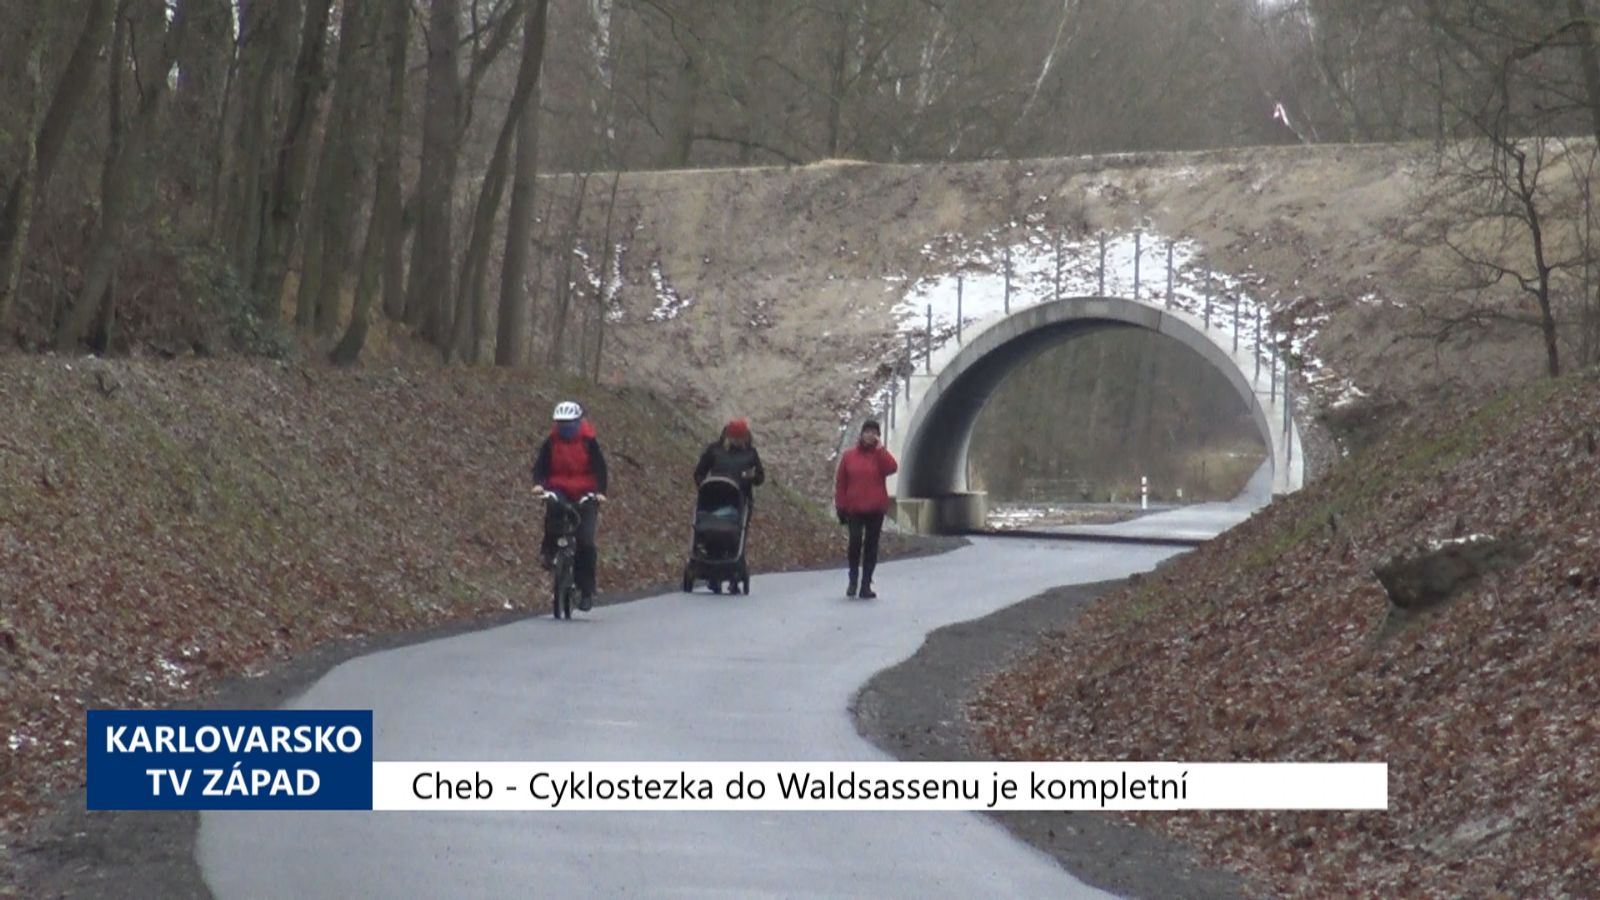 Cheb: Cyklostezka do Waldsassenu je kompletní (TV Západ)